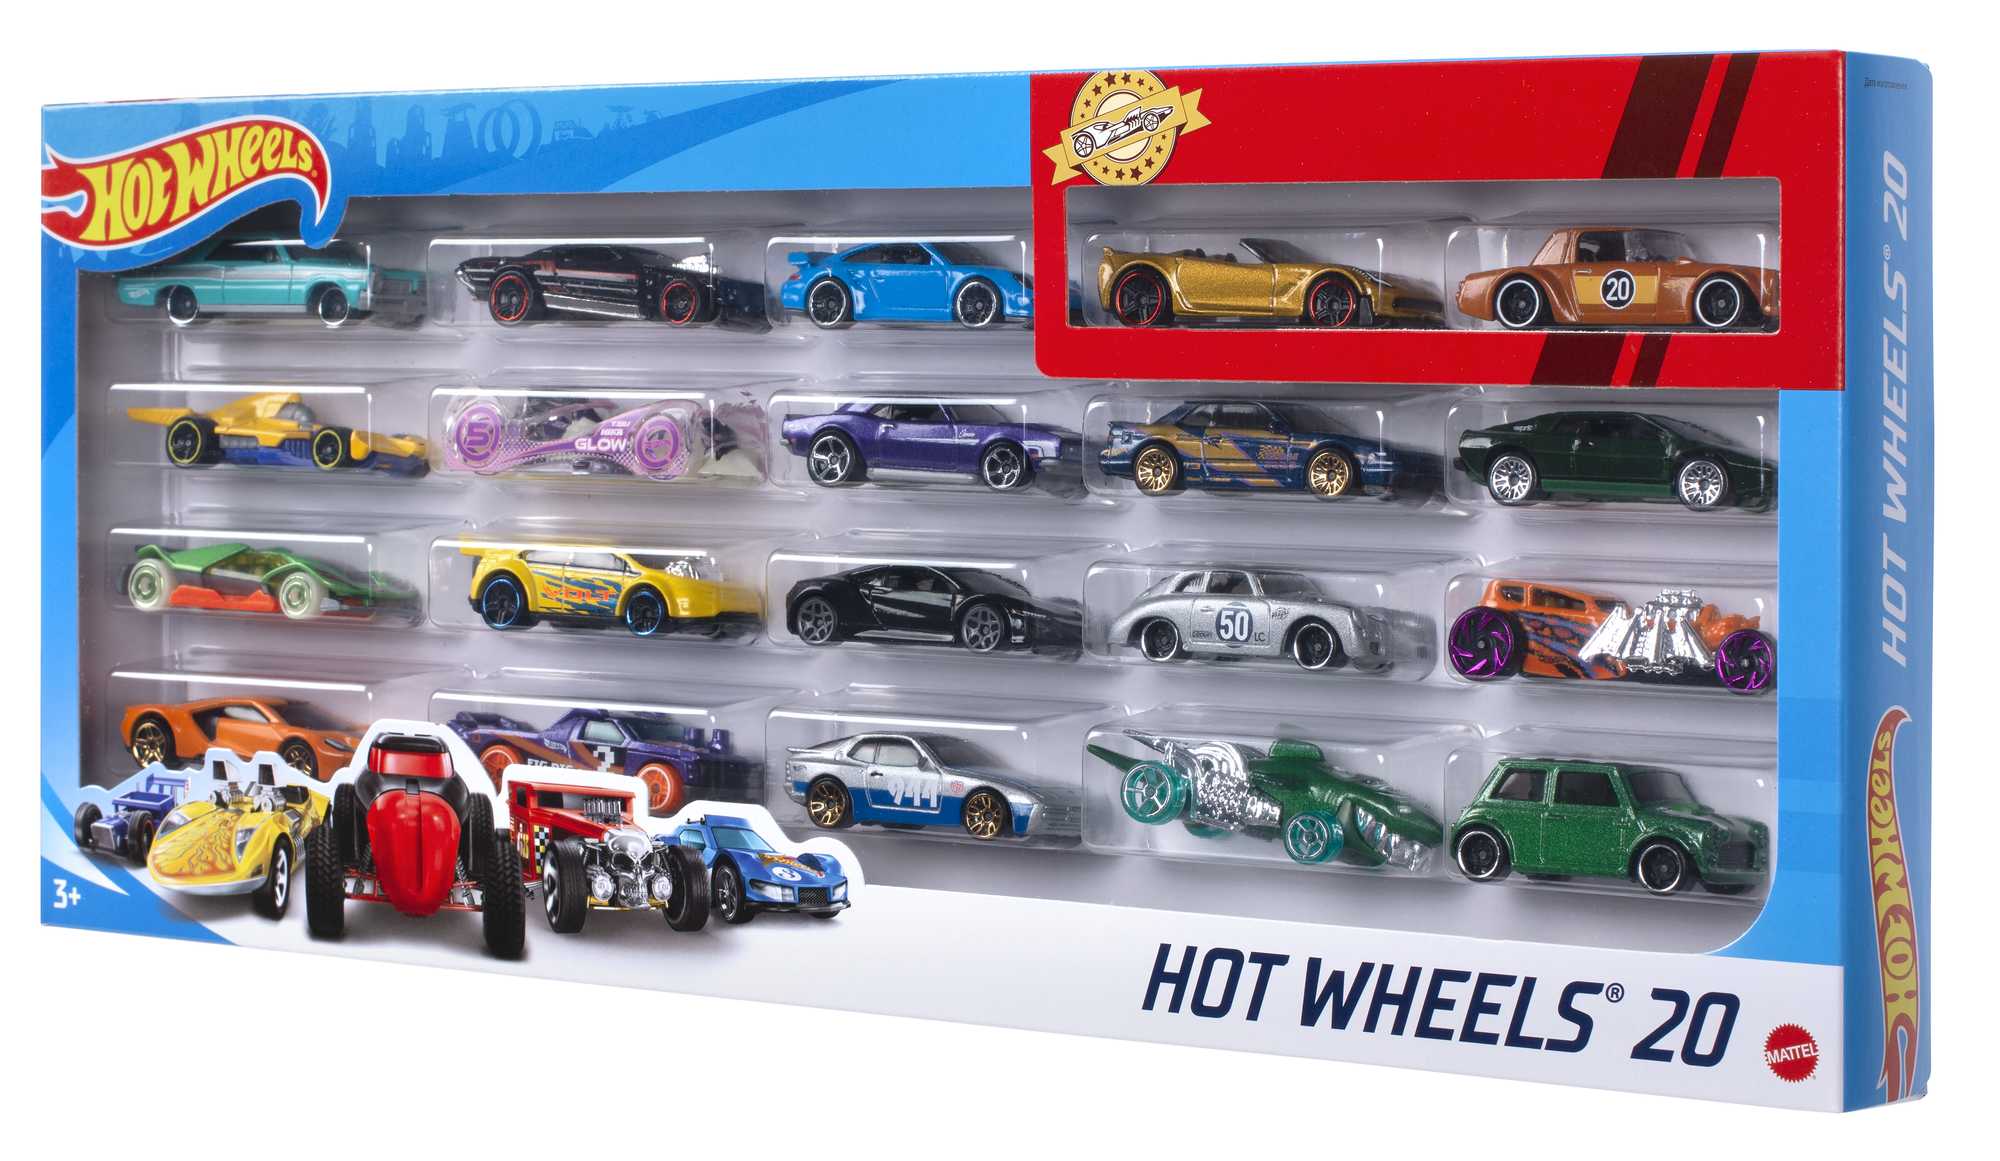 Hot Wheels - Vehicules miniatures - Coffret 20 véhicules- Modèle